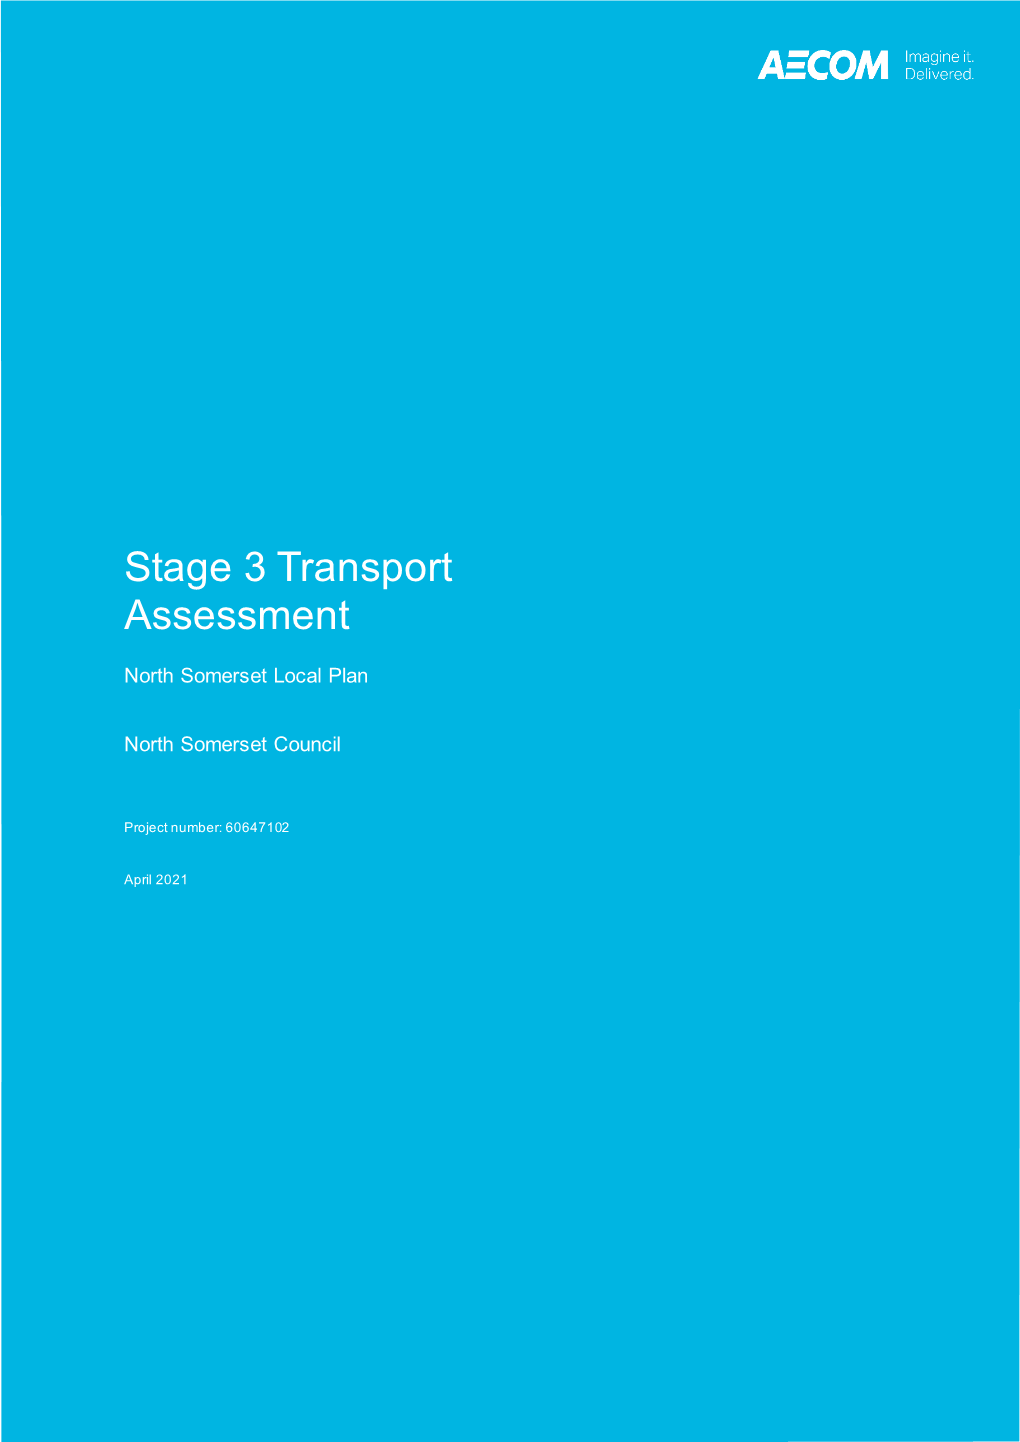 NSLP Stage 3 Transport Assessment